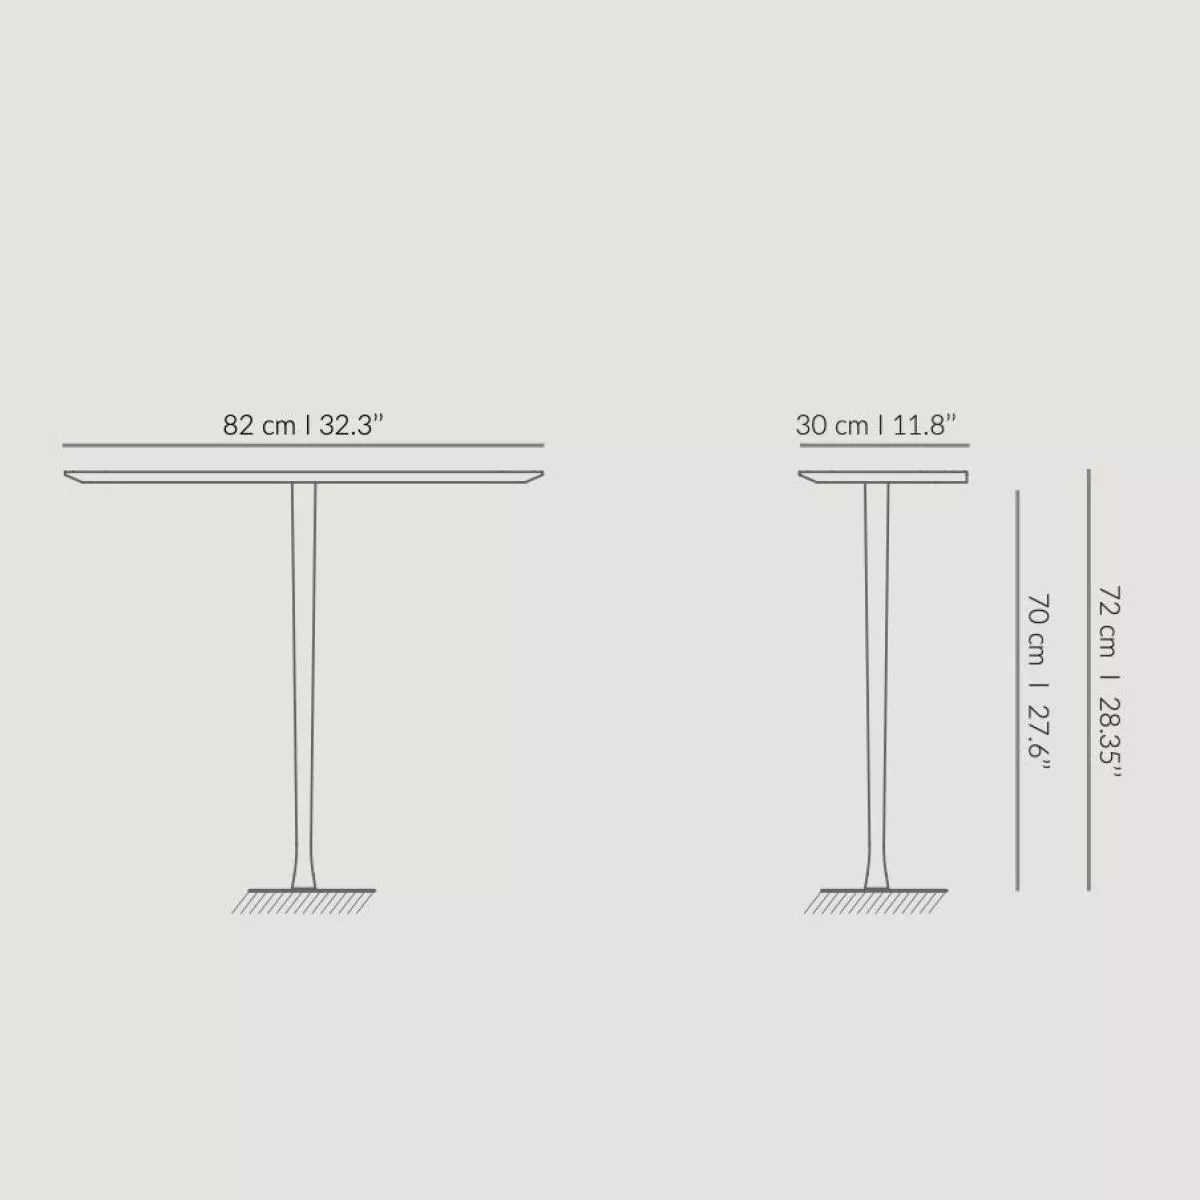 Stilvolles kleines Wandregal / Sideboard mit Echtholzfurnier – Modell 1 (stehend)